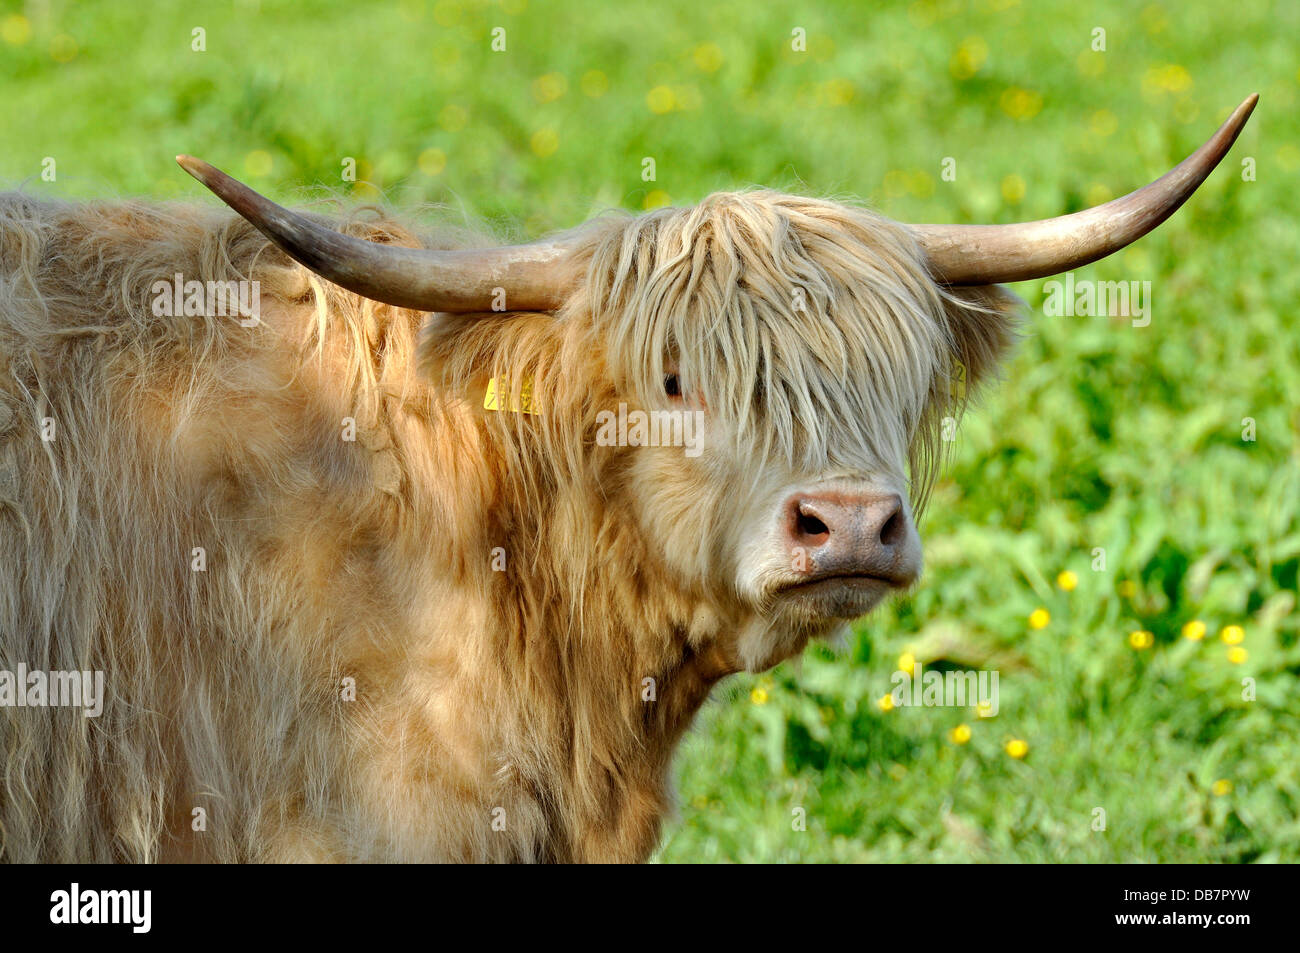 Scottish Highland cattle ou Kyloe (Bos primigenius f. taurus) dans un pré Banque D'Images